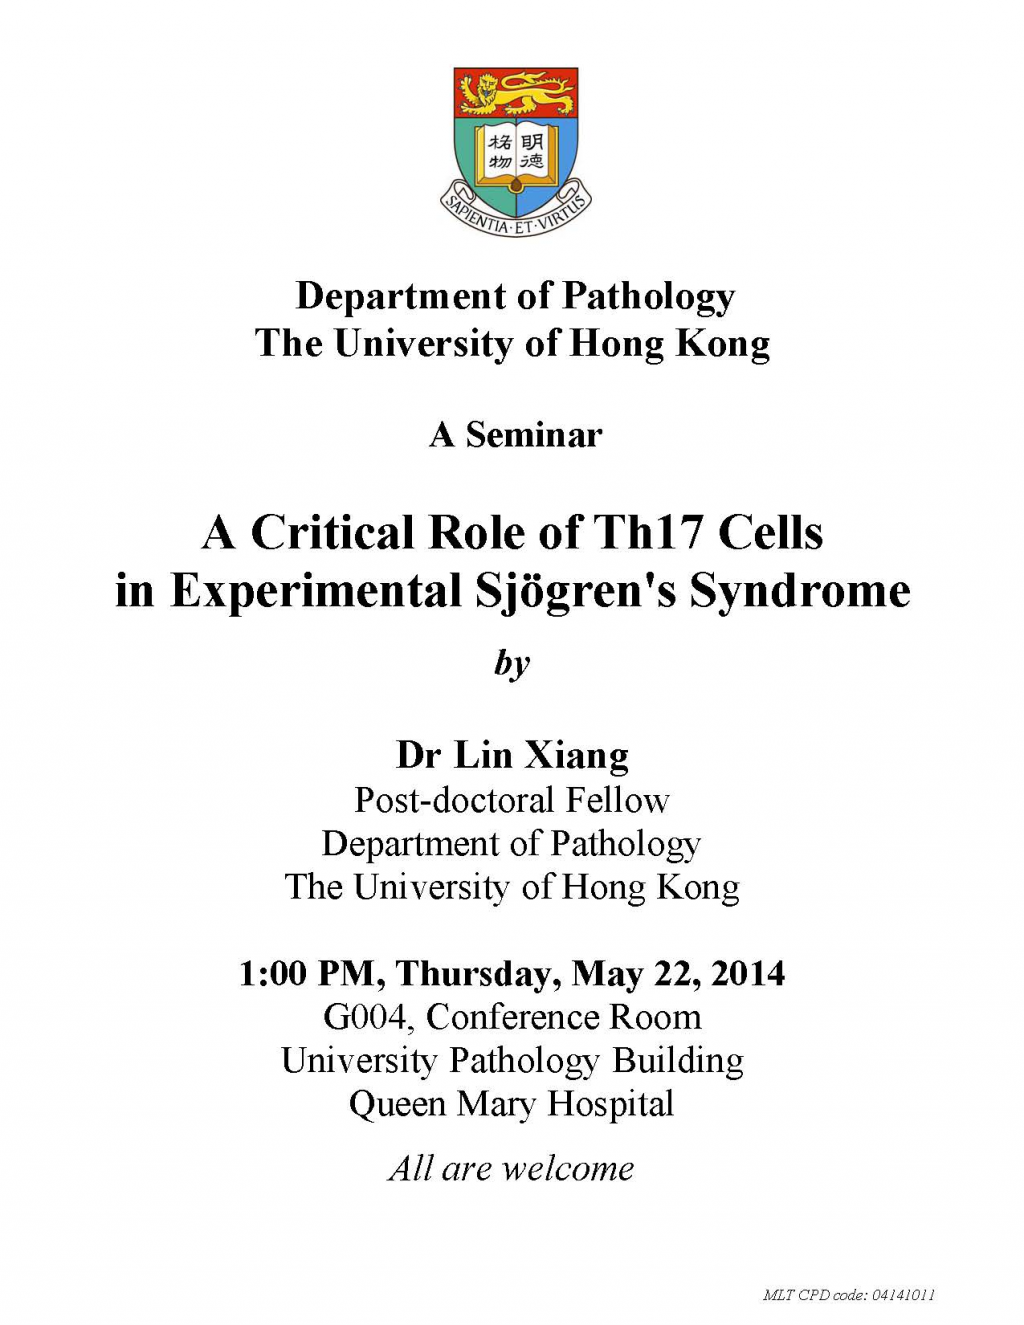 A Seminar by Dr Lin Xiang